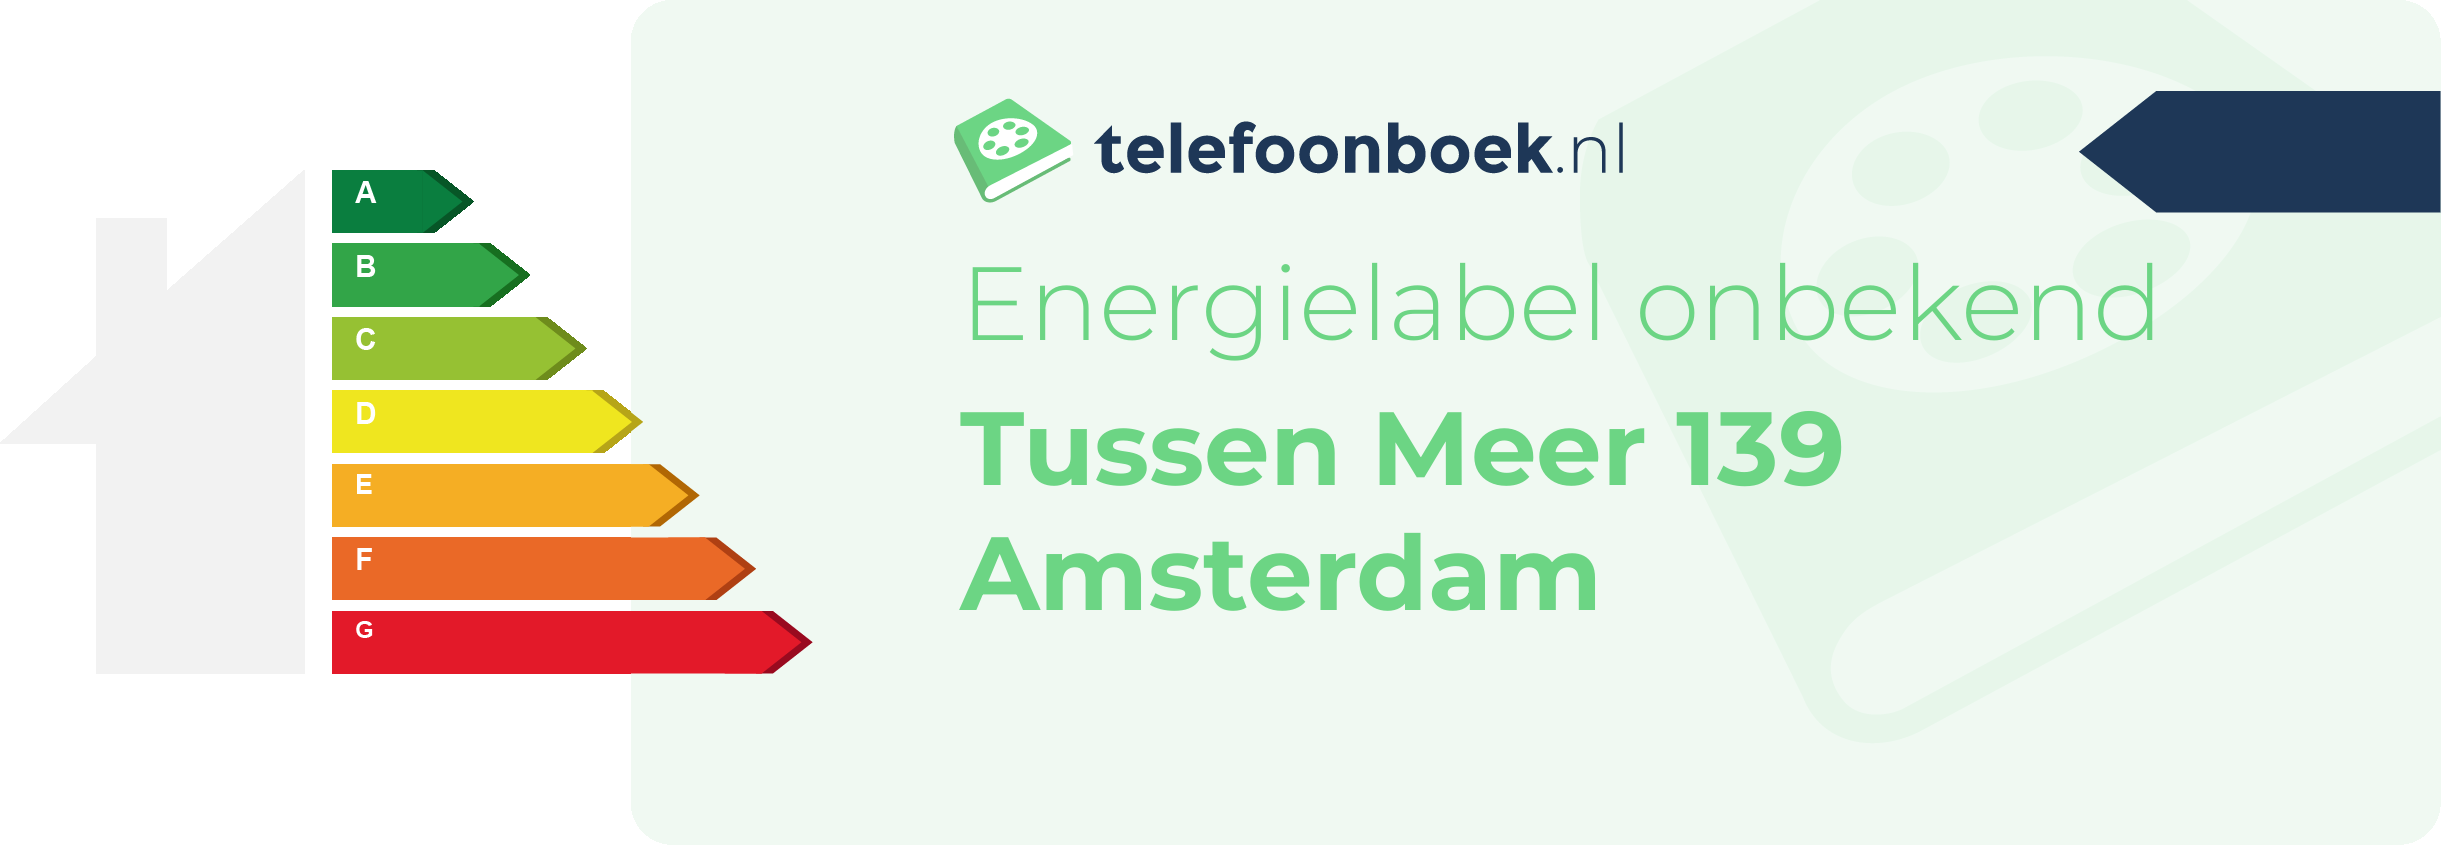 Energielabel Tussen Meer 139 Amsterdam